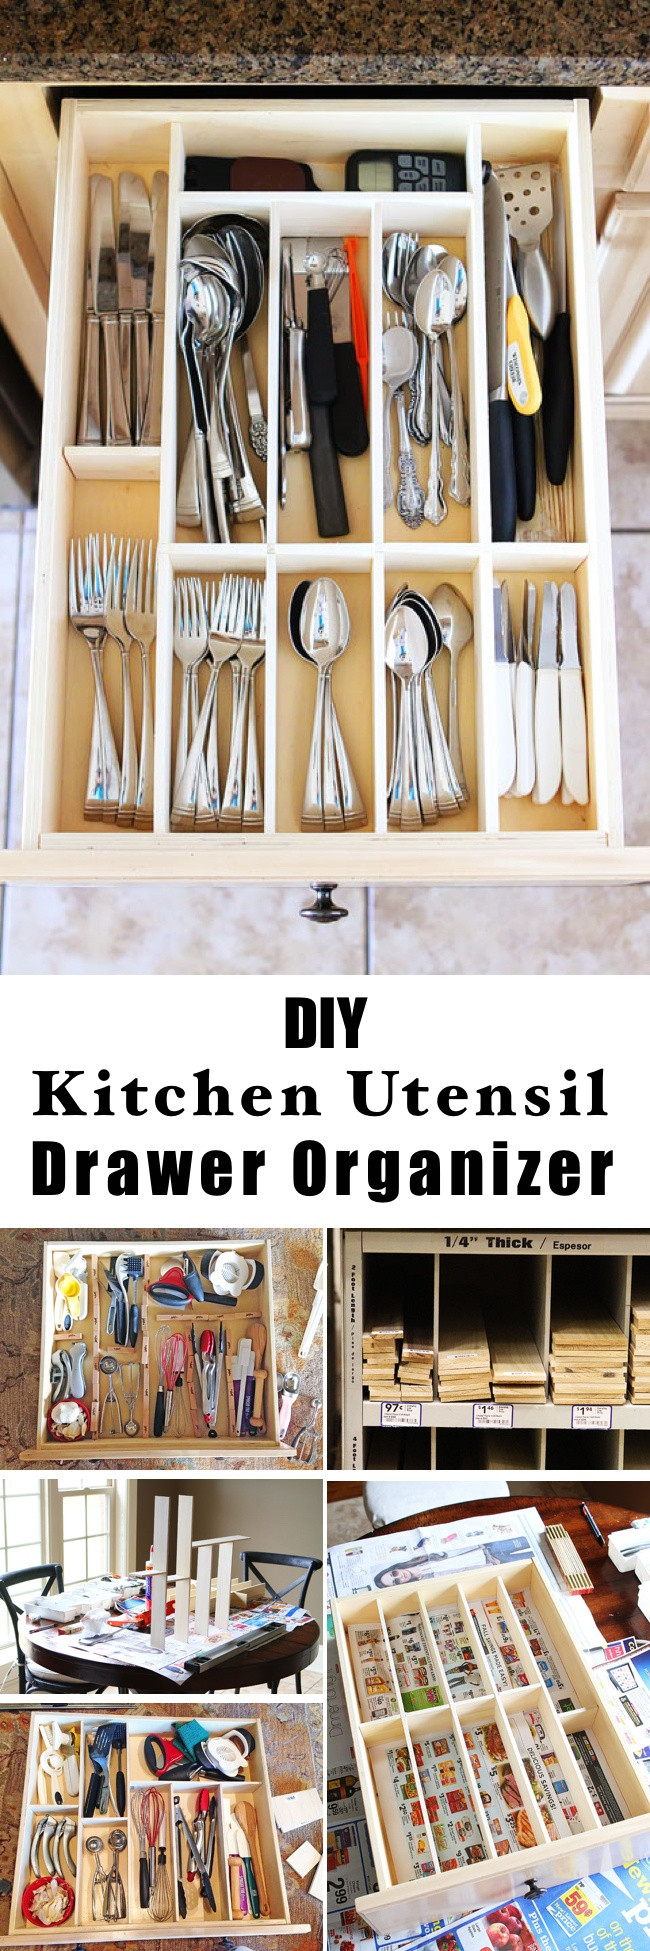 Kitchen Organizers DIY
 15 Innovative DIY Kitchen Organization & Storage Ideas